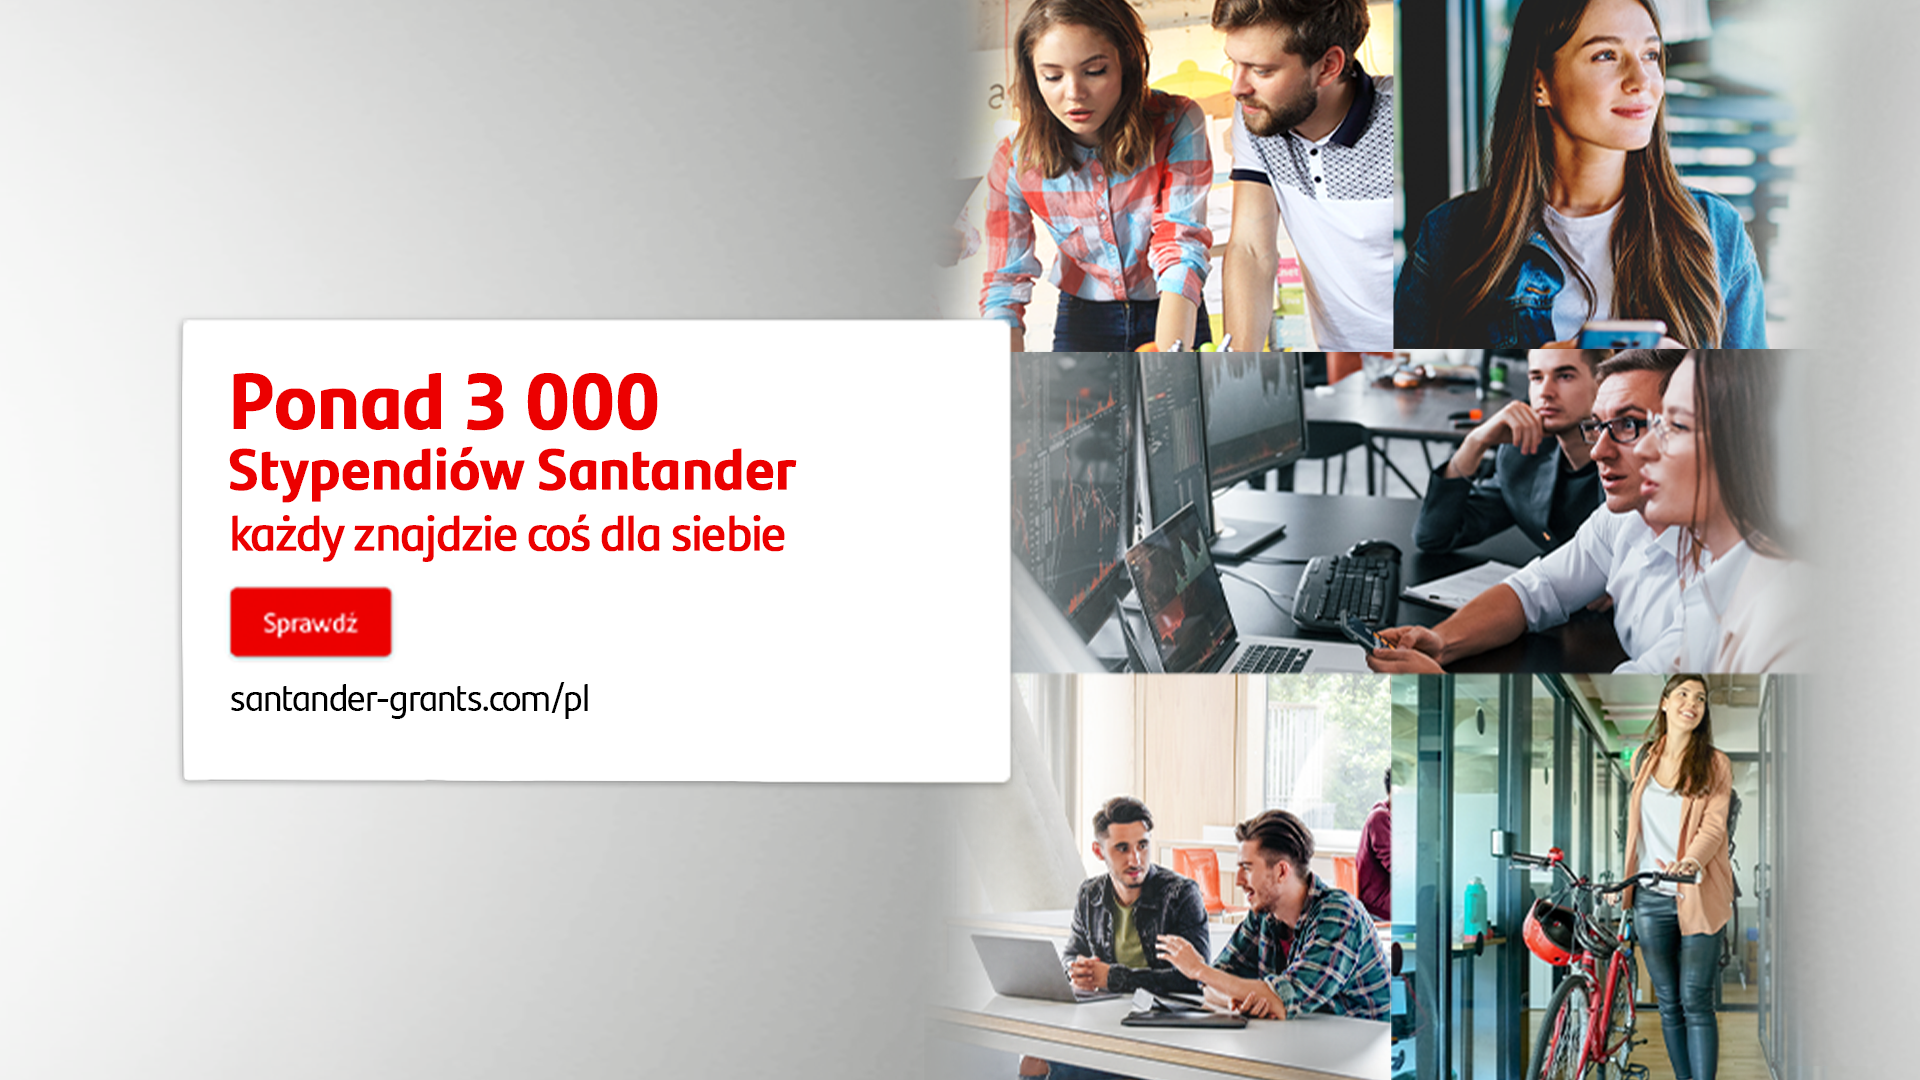 3 200 miejsc na bezpłatne kursy w ramach Stypendiów Santander - #NeverStopLearning